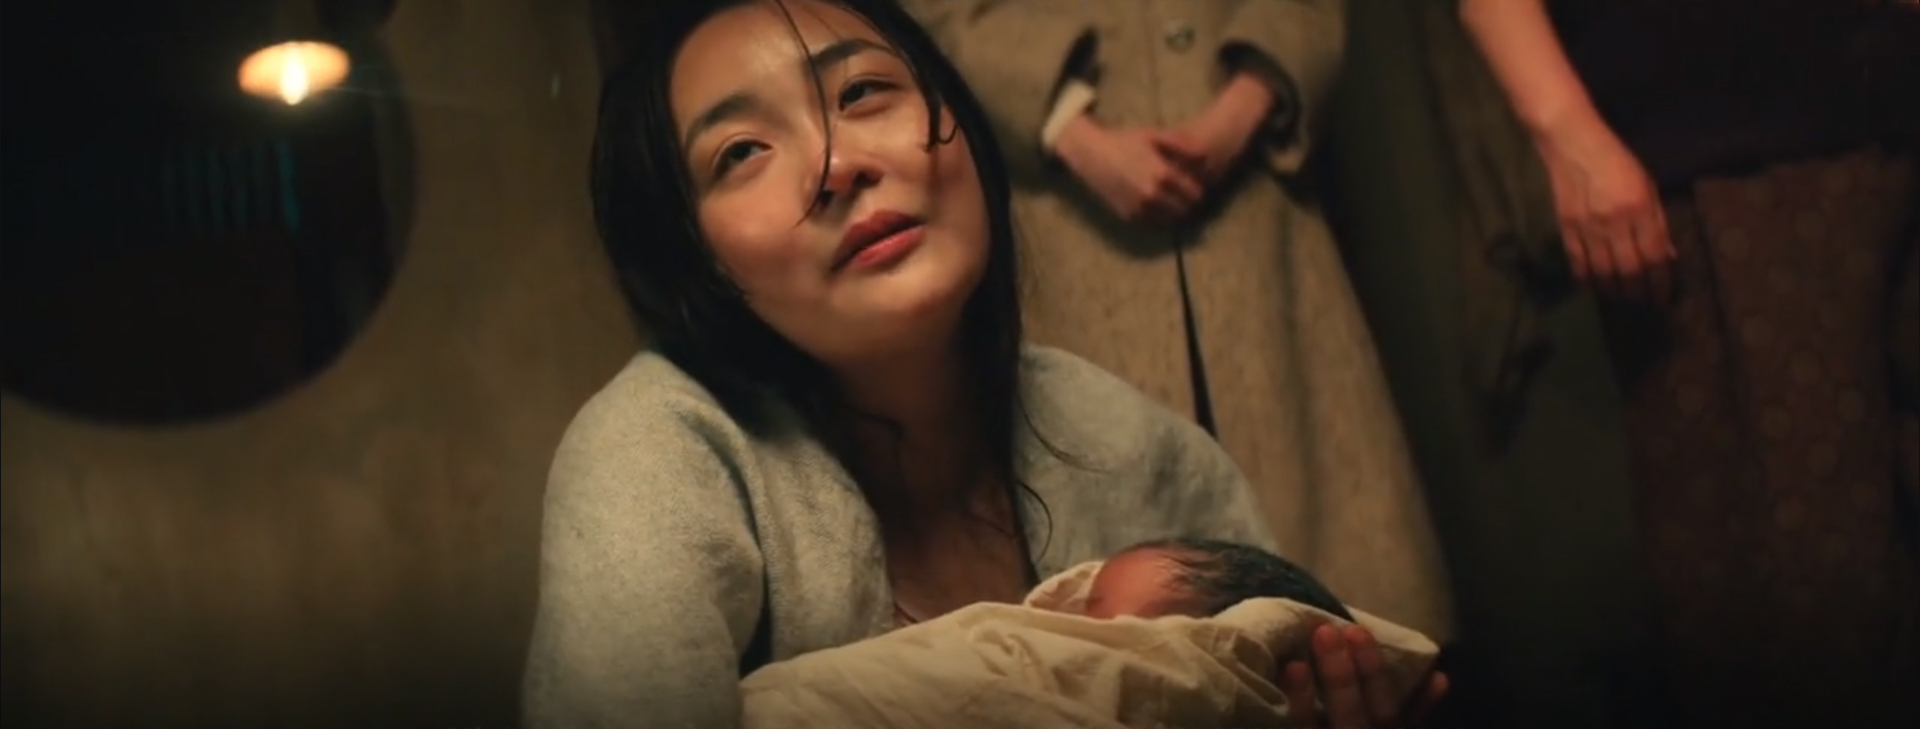 Pachinko tập 6: Kim Min Ha sinh con trai, Lee Min Ho đòi bỏ vợ - Ảnh 4.